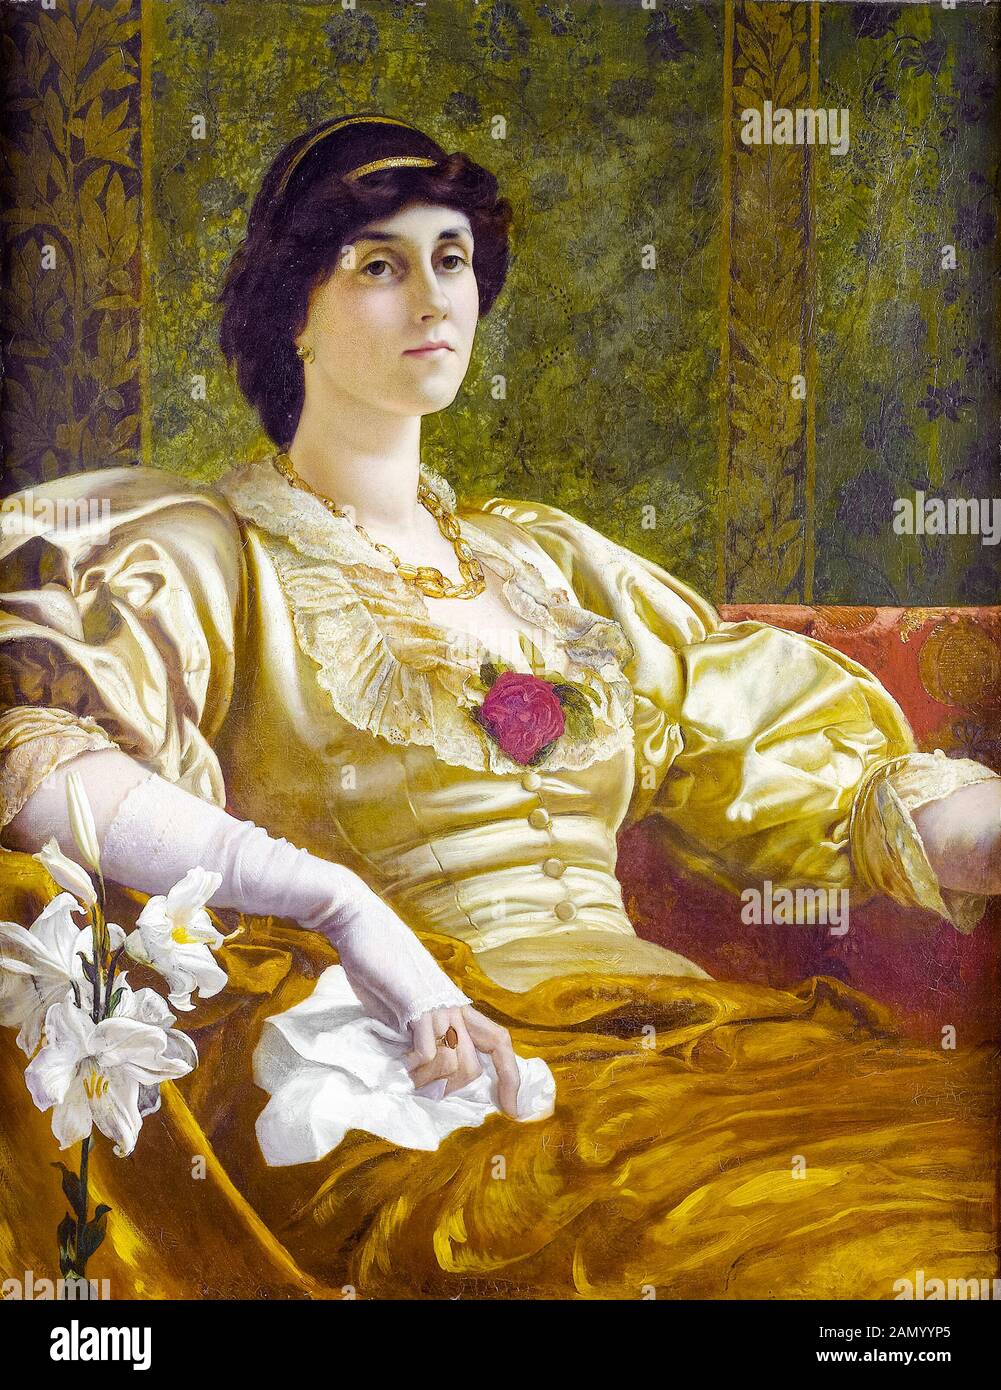 William Blake Richmond, Ethel Bertha Harrison, (1851-1916), portrait peint, avant 1916 Banque D'Images